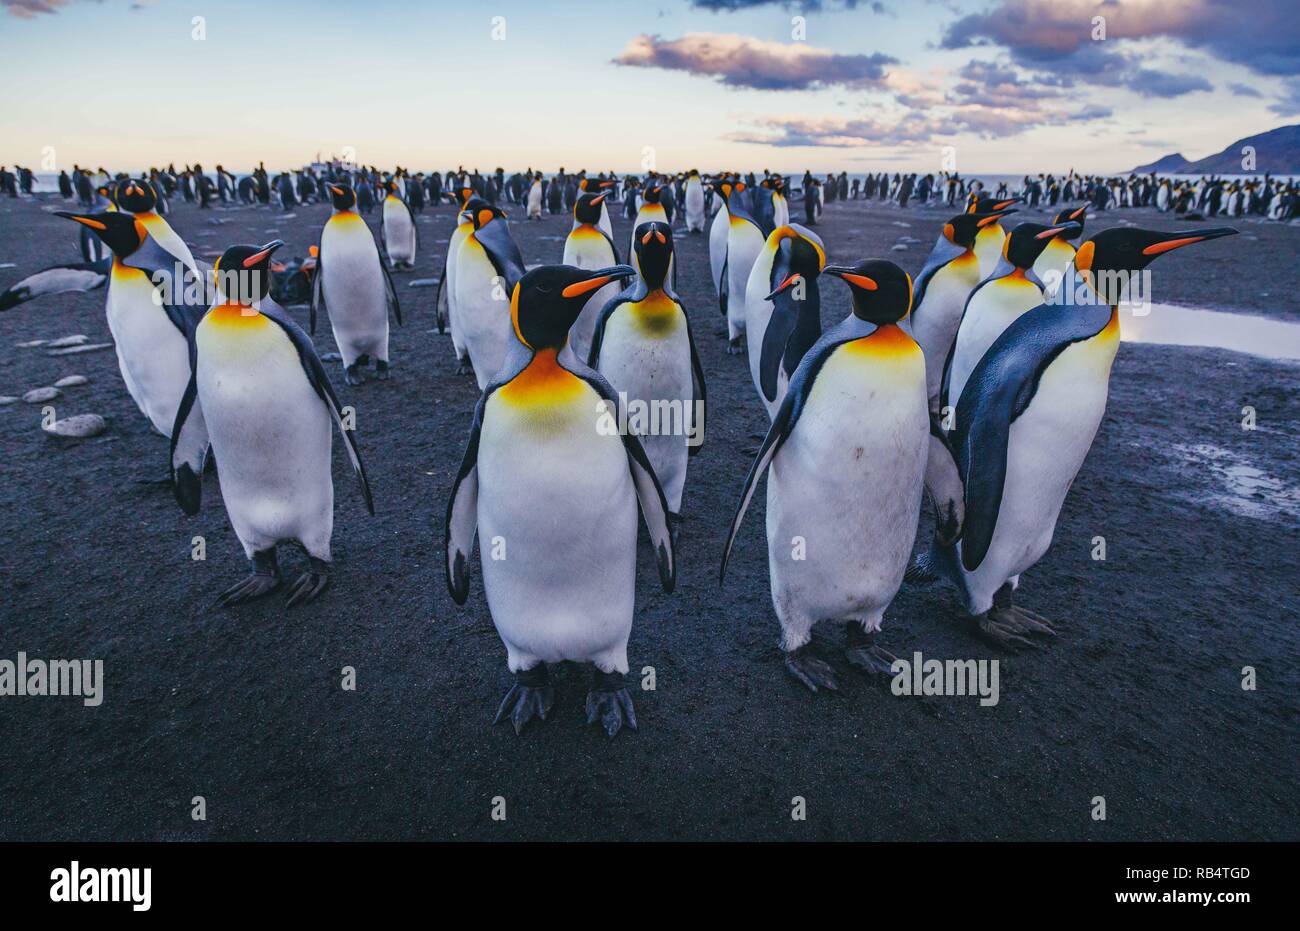 Des images incroyables, la capture d'une 'mer' de pingouins avec des centaines d'oiseaux à perte de vue. Les superbes clichés montrent les pingouins gatheri Banque D'Images